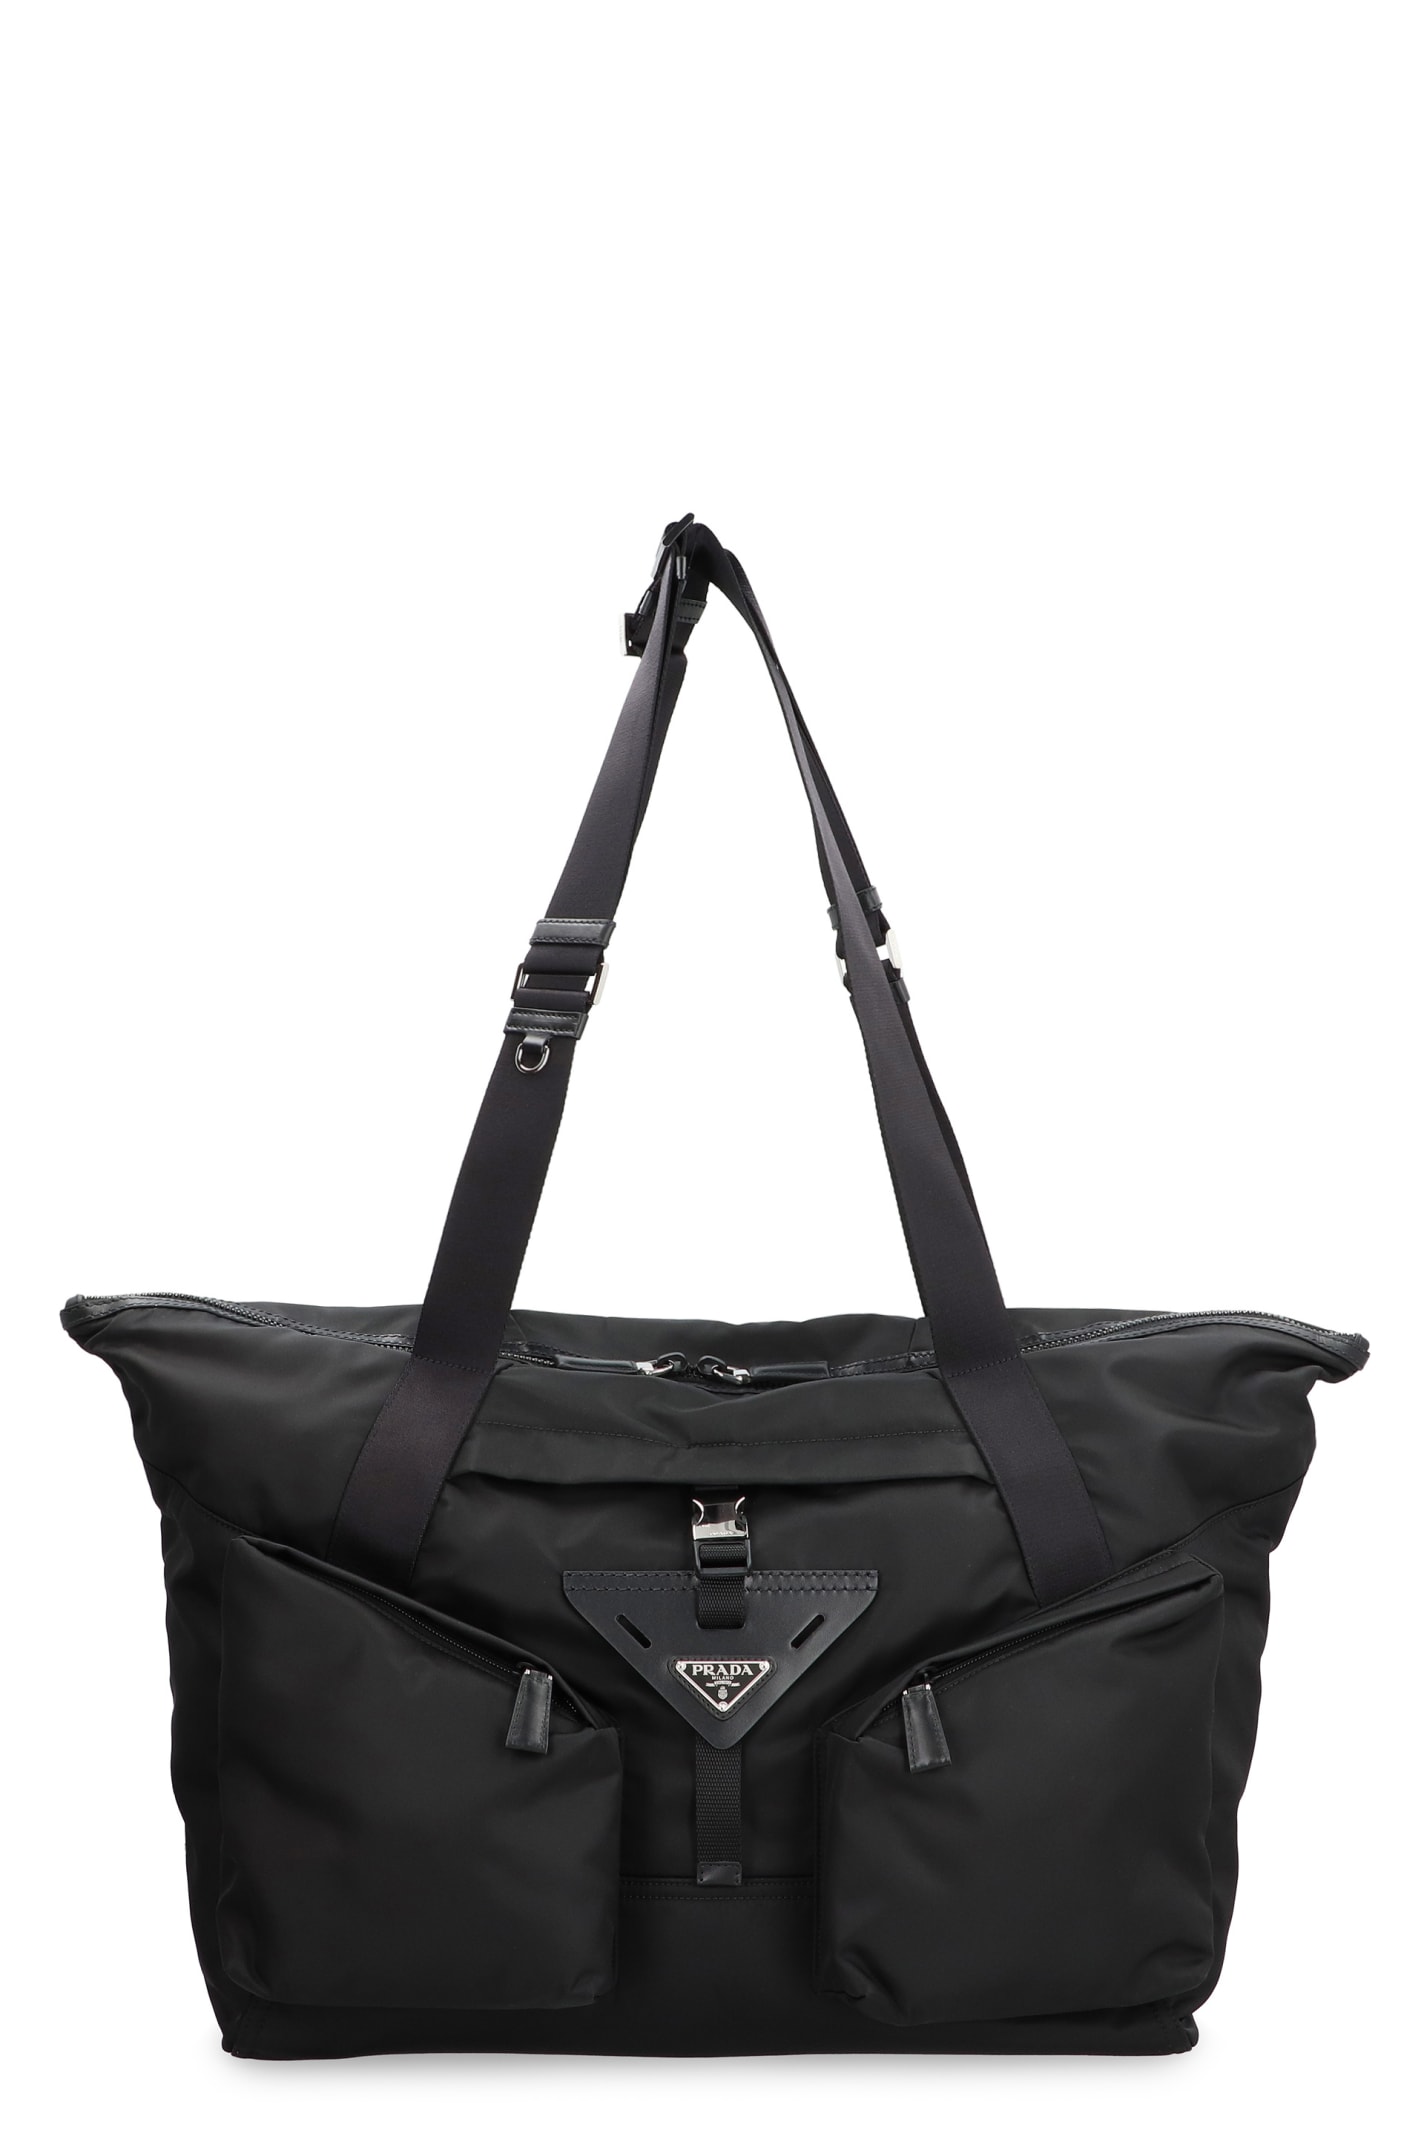 Prada Re-nylon Travel Bag In Black